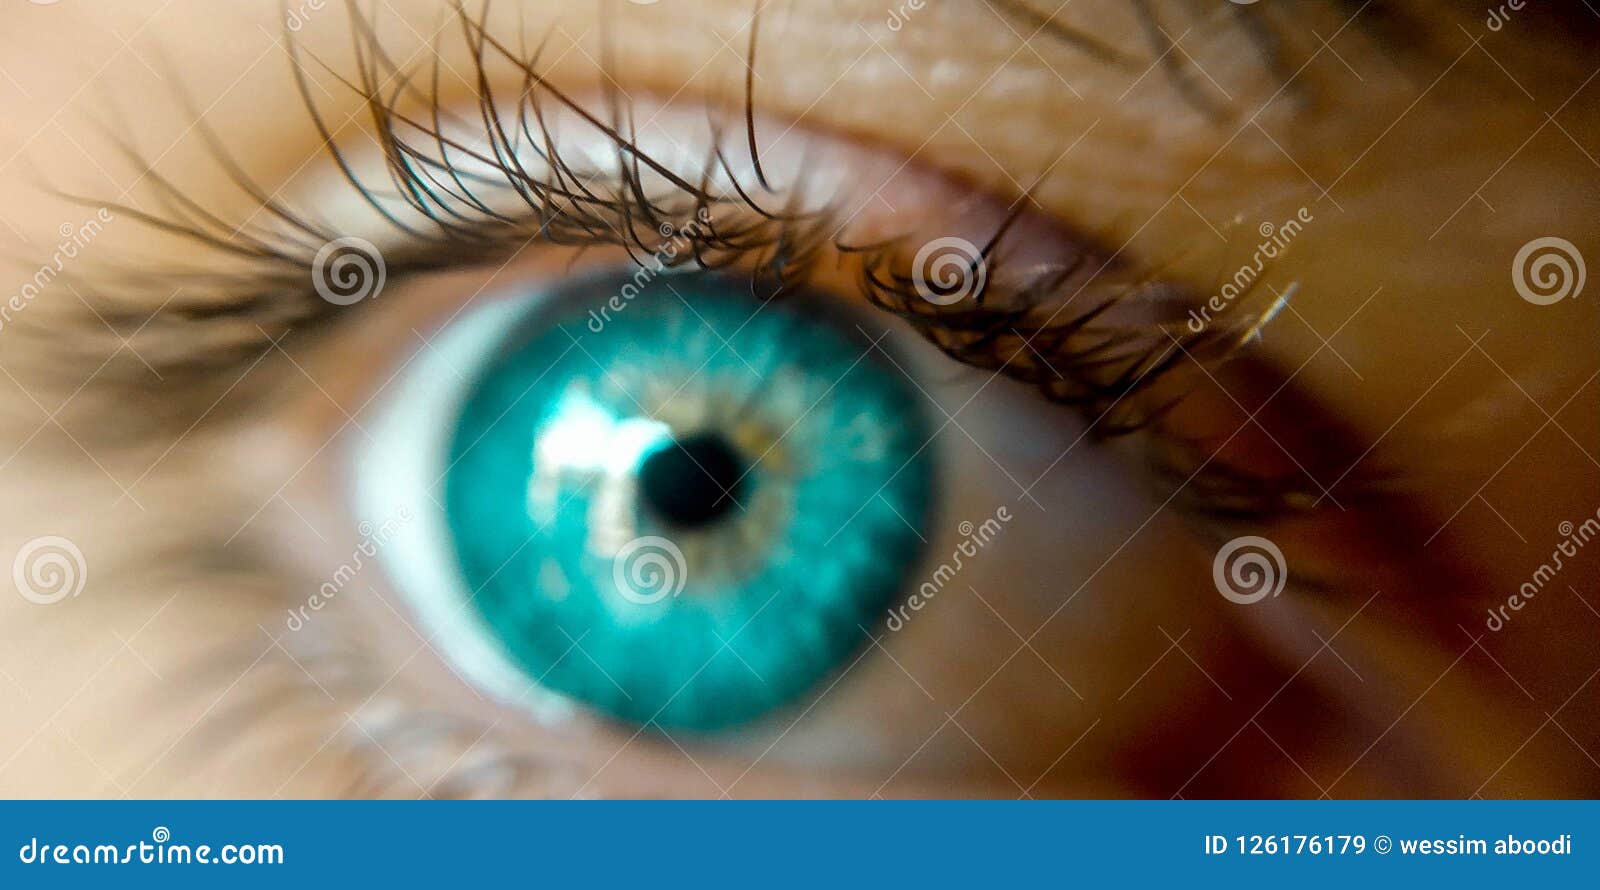 Сине Зеленые Глаза Фото